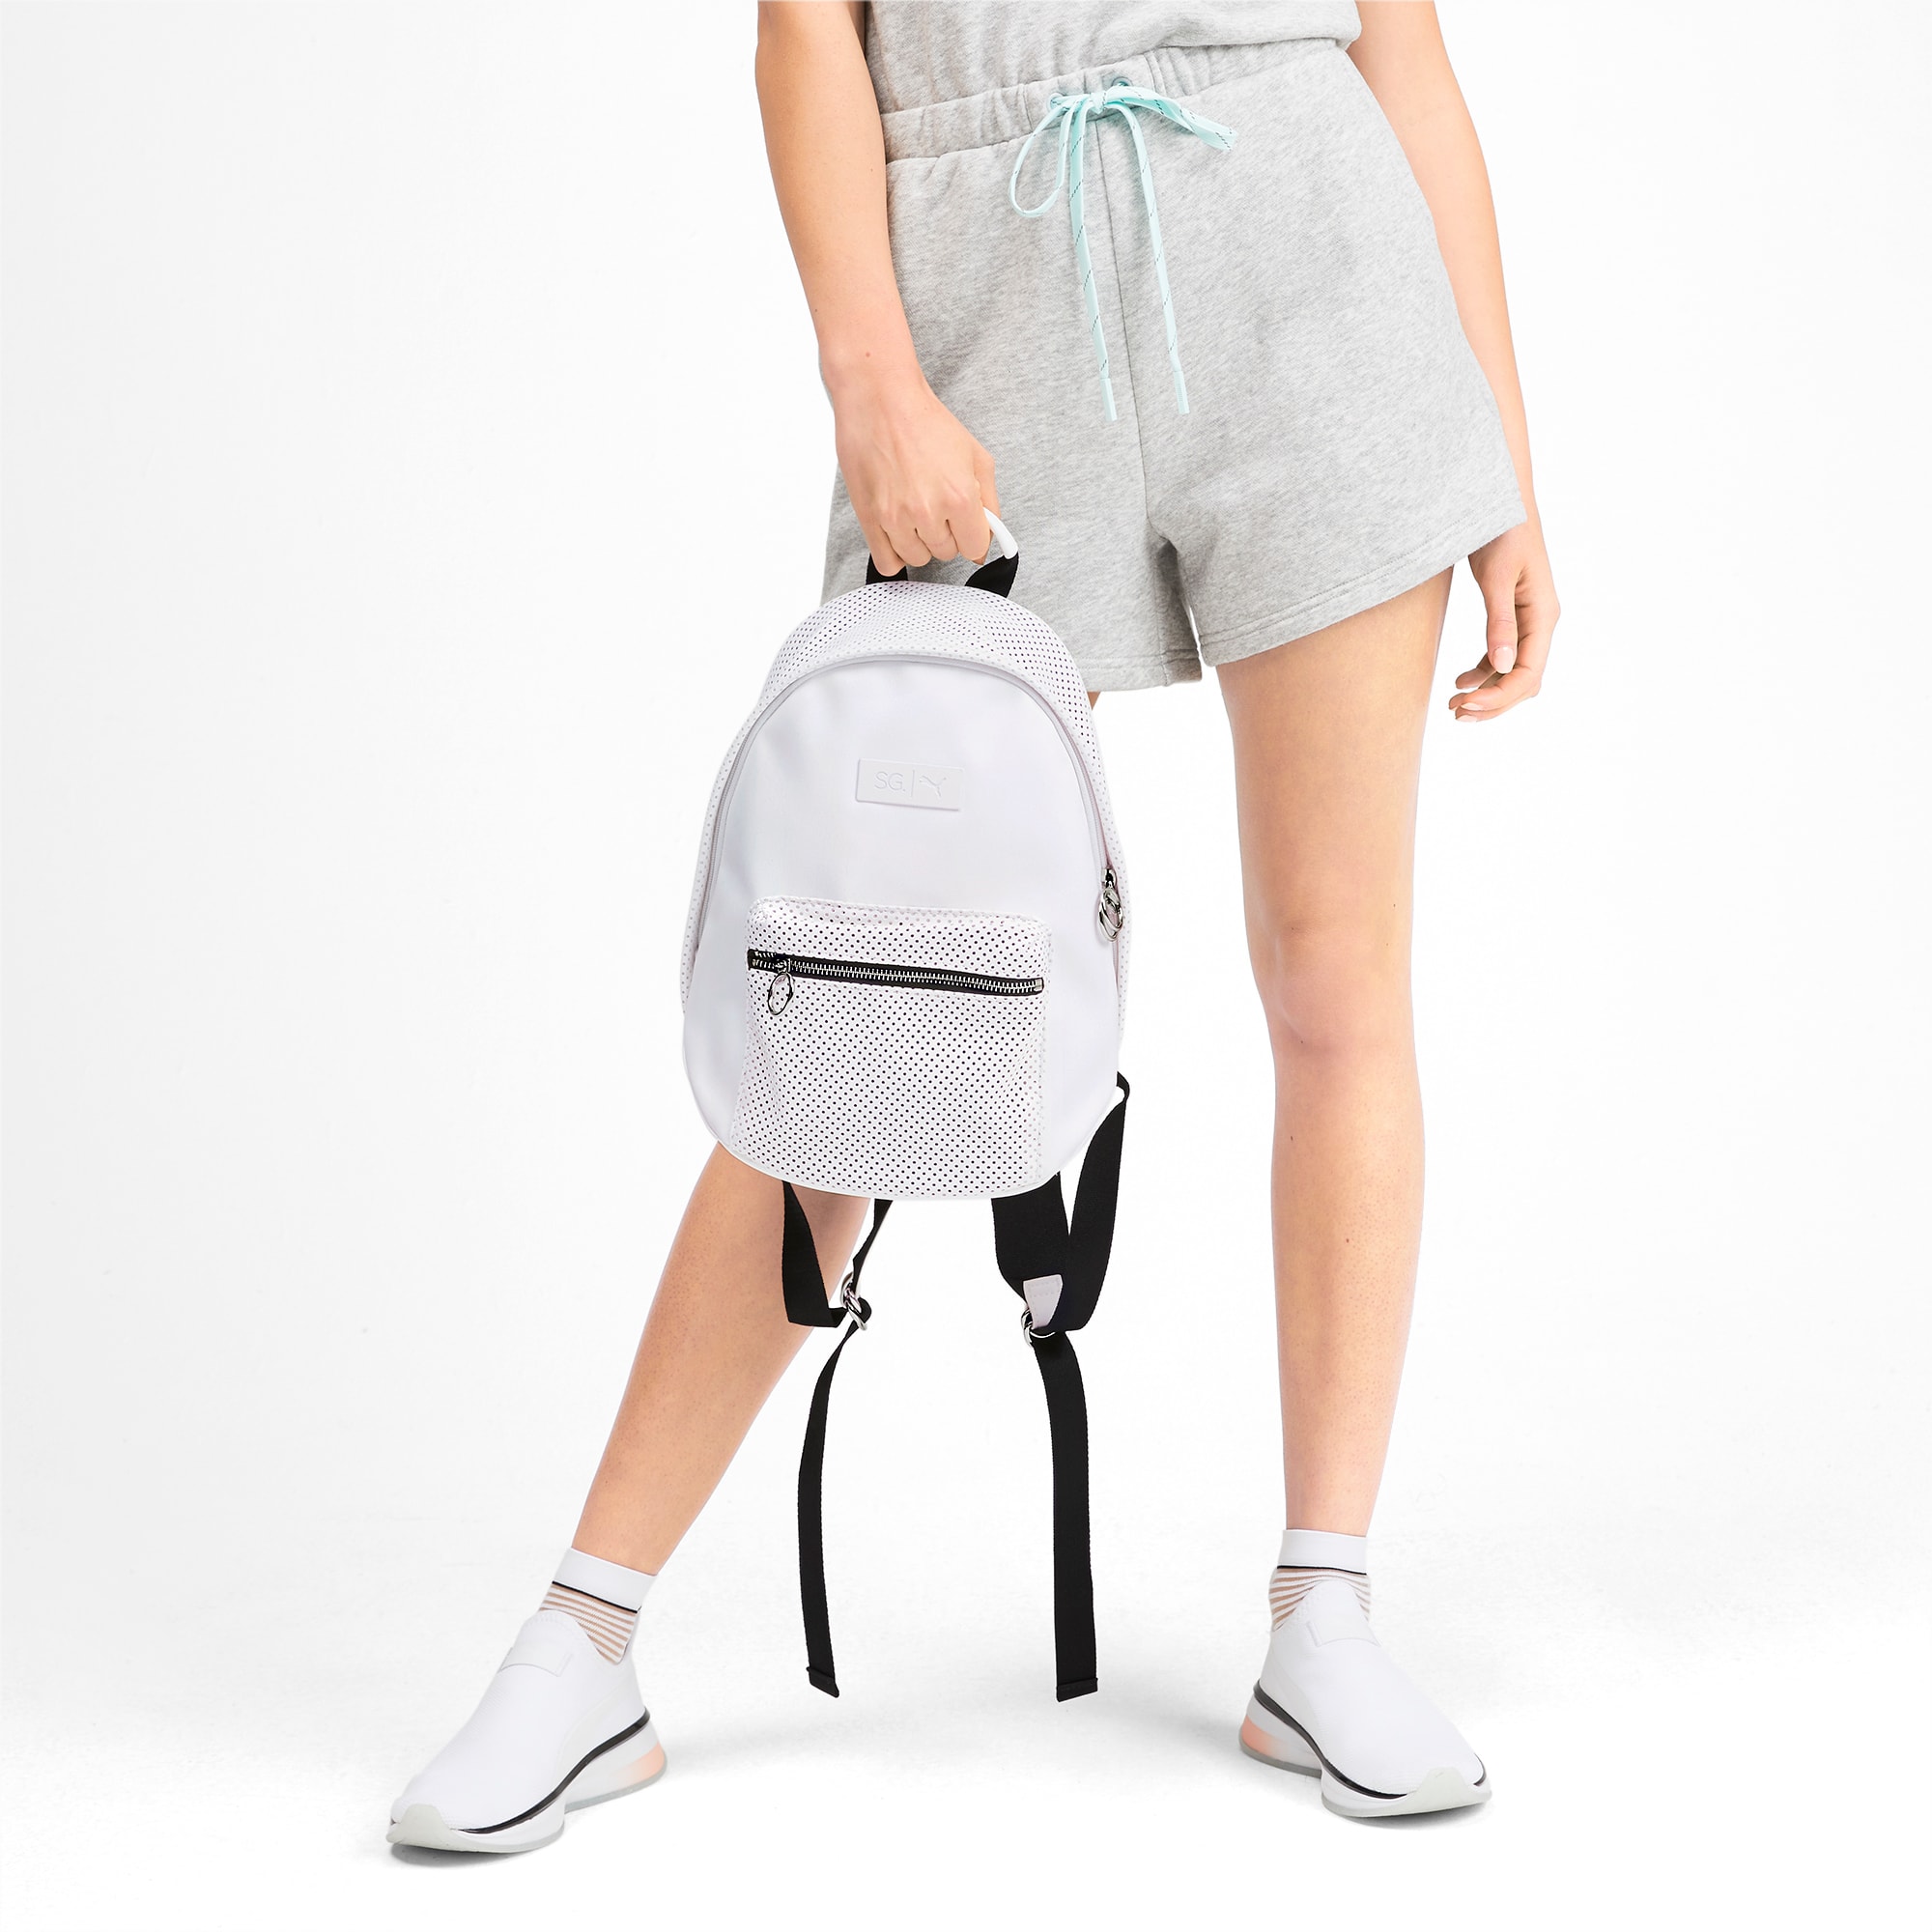 sg x puma style backpack